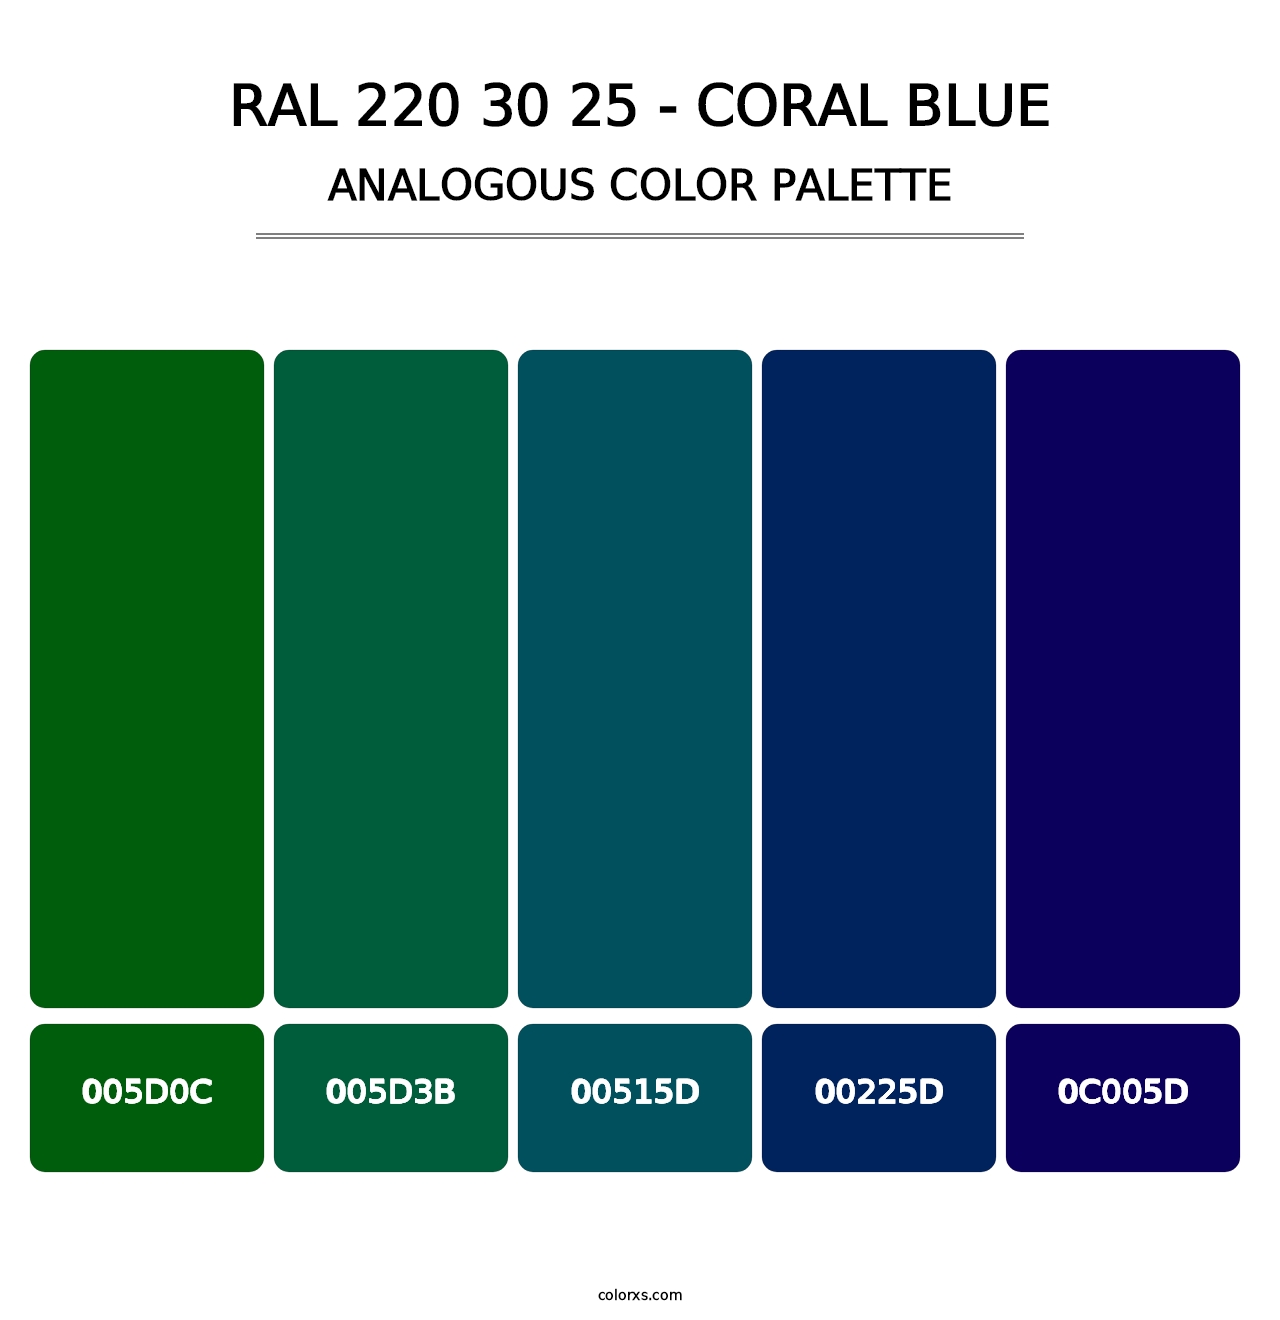 RAL 220 30 25 - Coral Blue - Analogous Color Palette